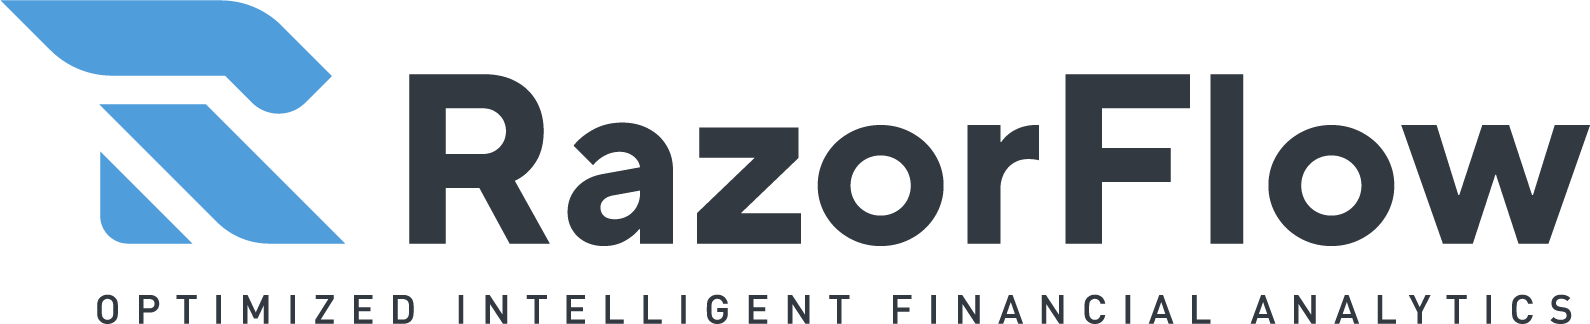 Razorflow logo 3@2x